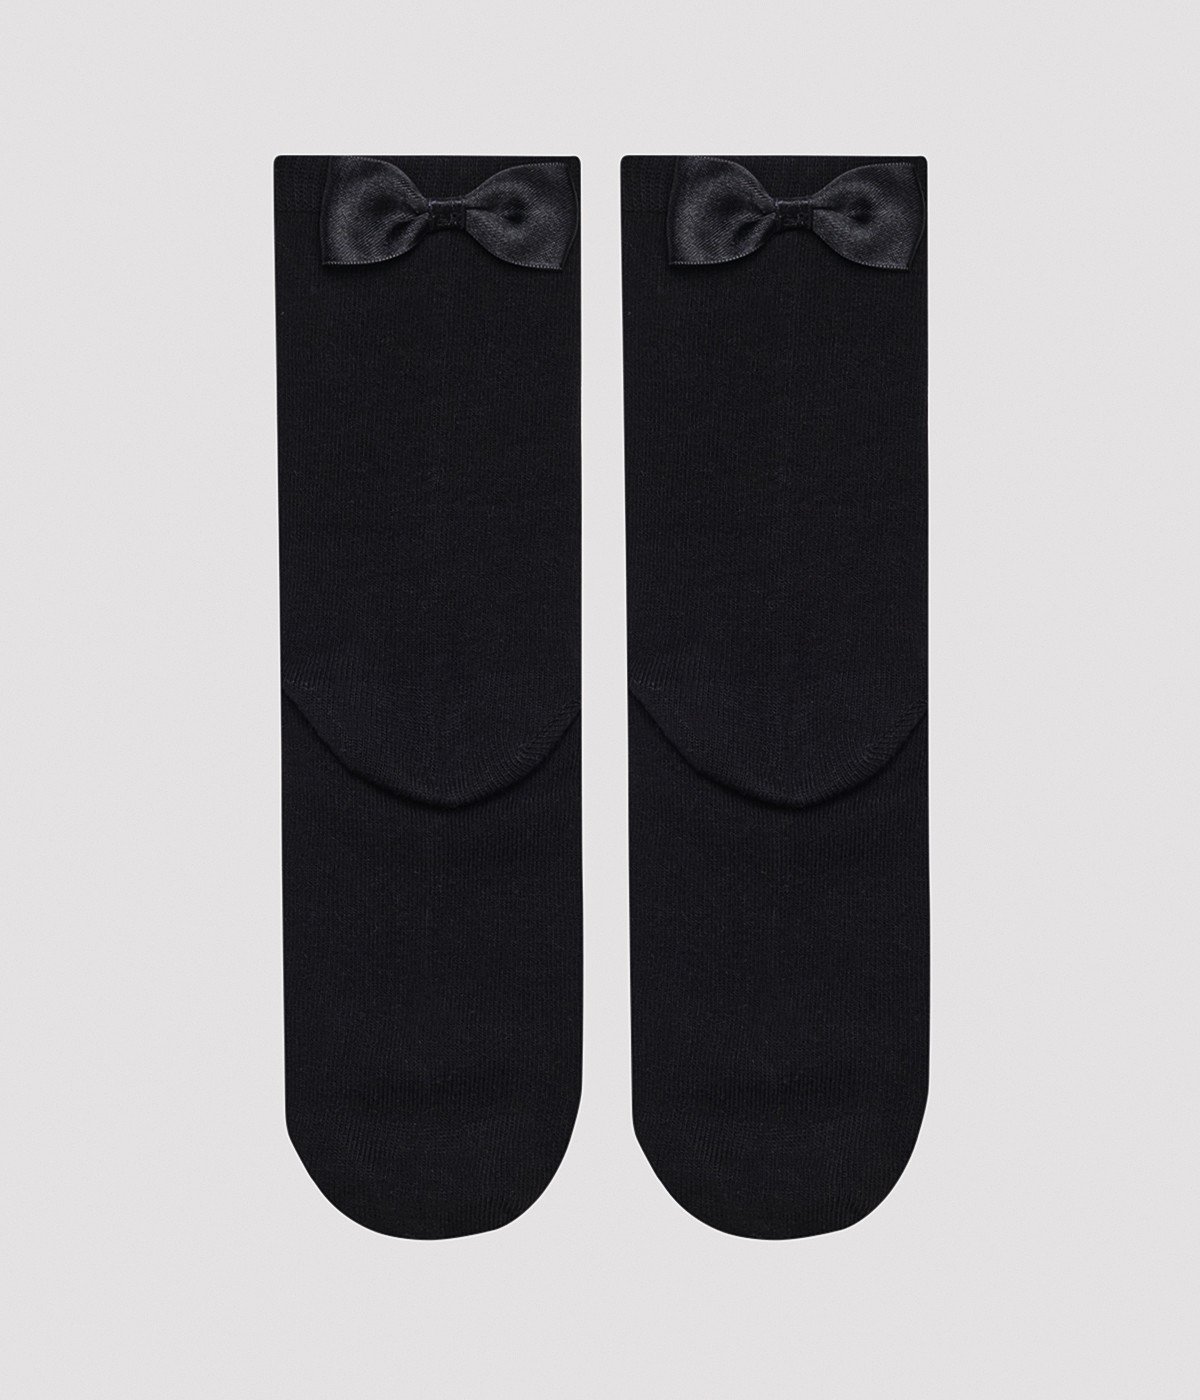 Tokyo Bowtie Socket Socks